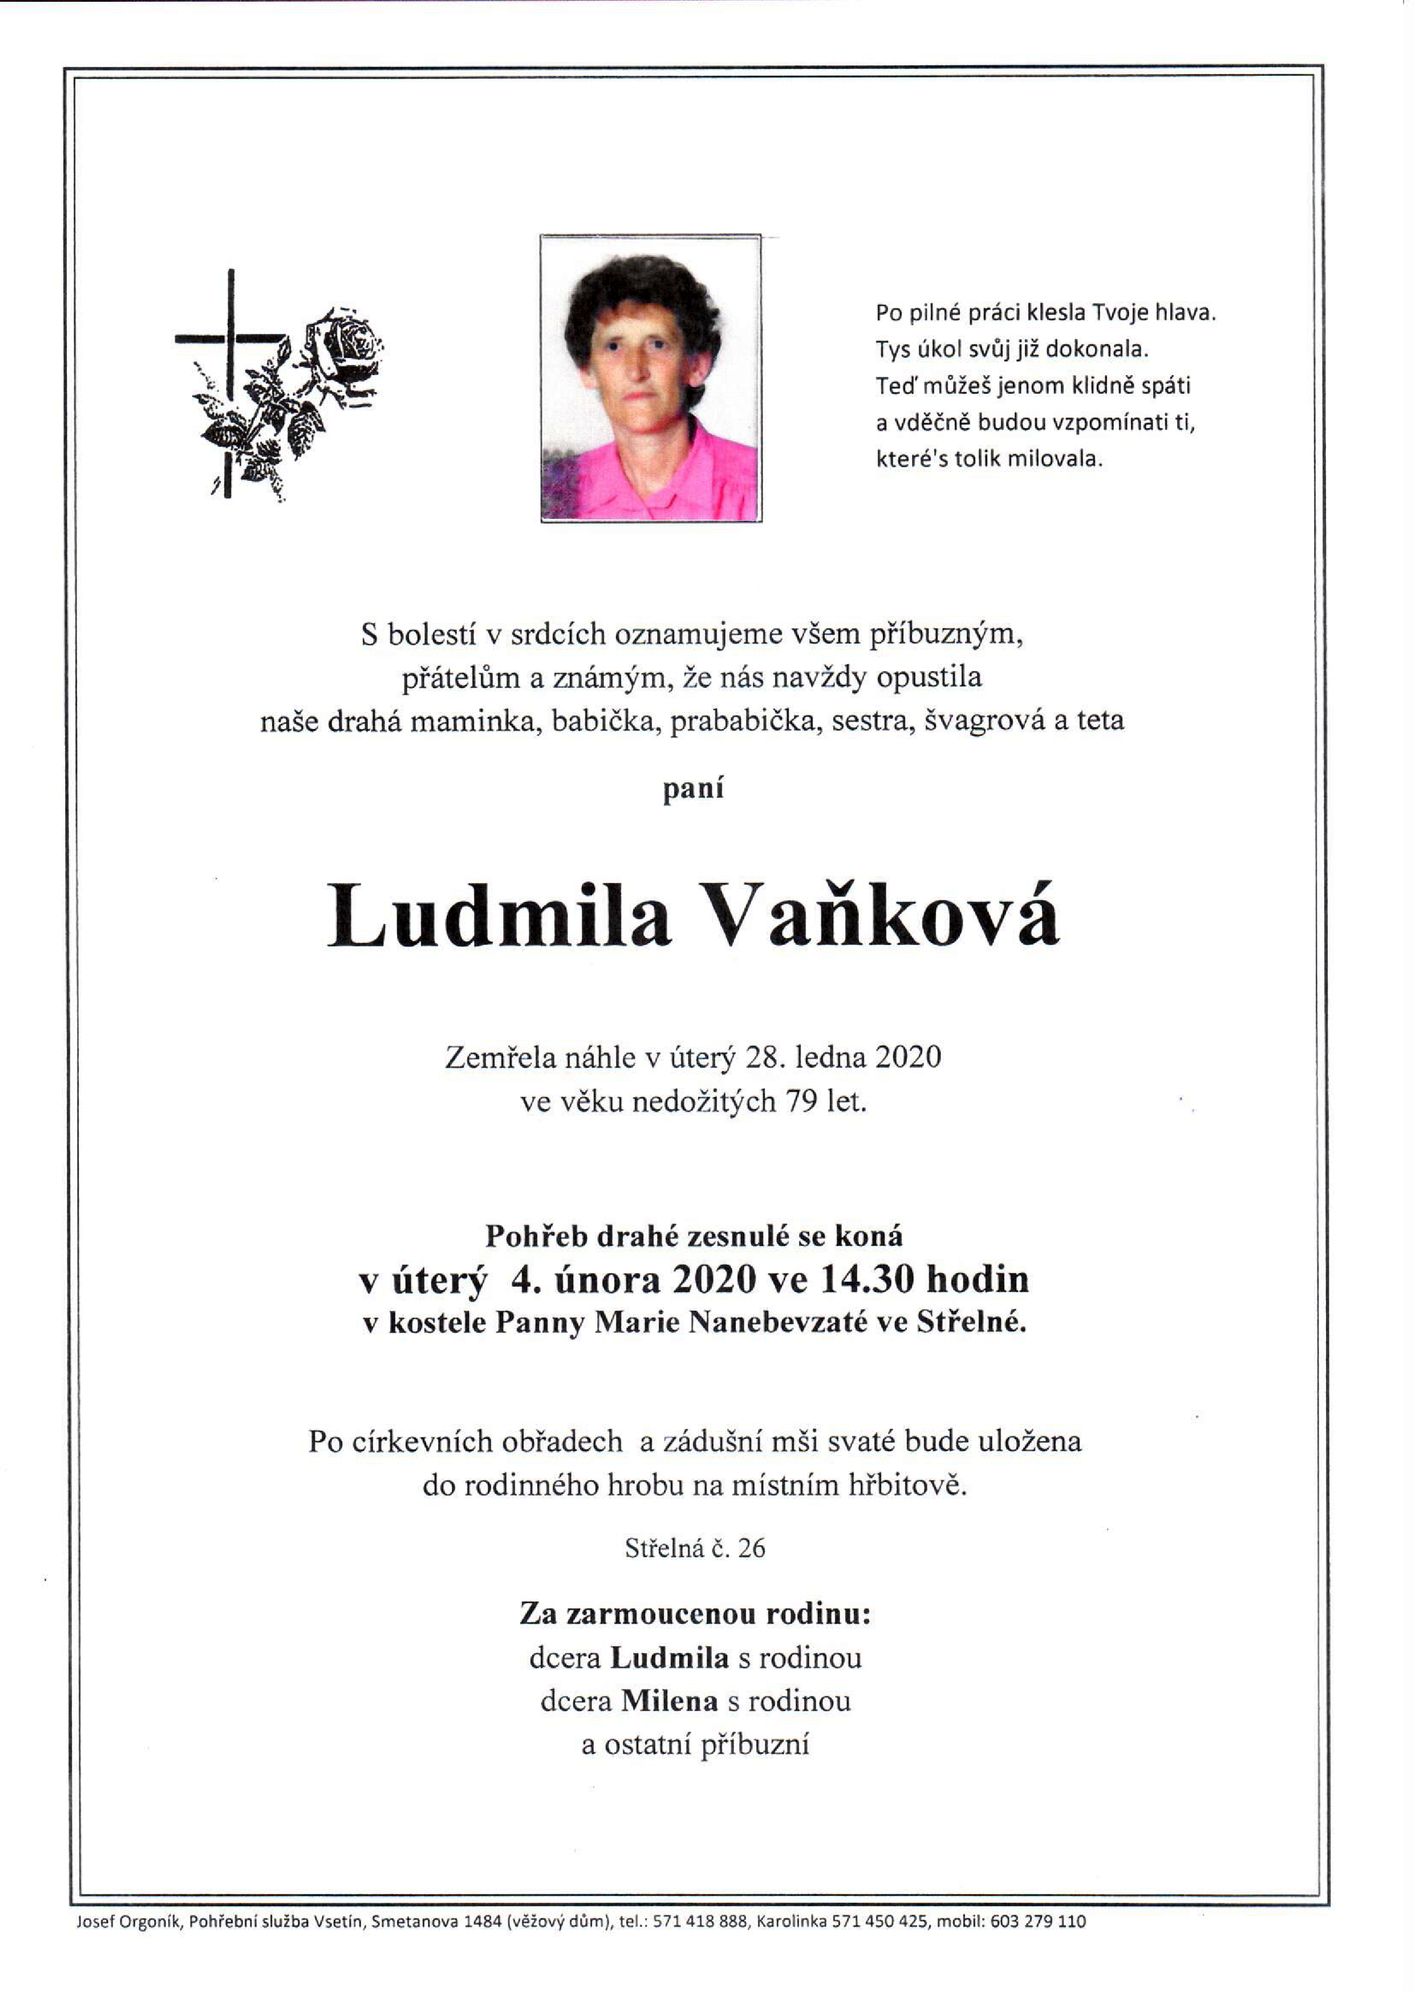 Ludmila Vaňková